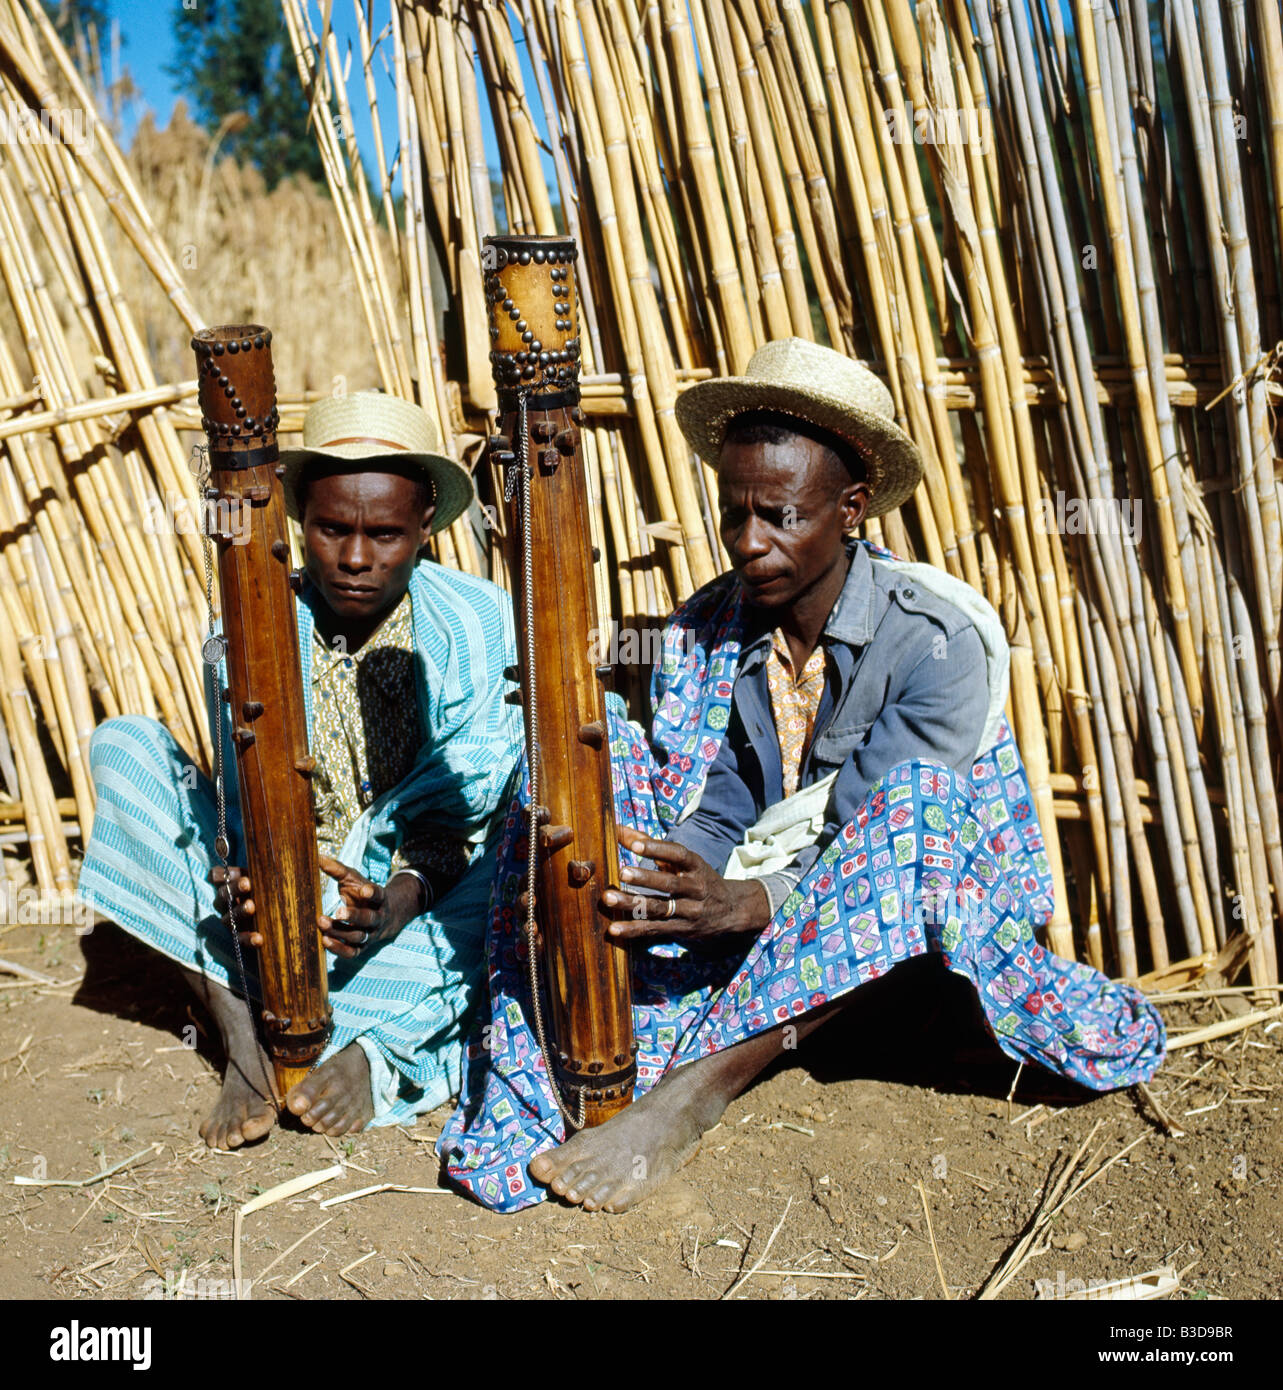 Le valiha est une variété de cithare tubulaire en bambou que l su rencontre dans tout Madagascar Ses origines sont indéniablemen Foto Stock